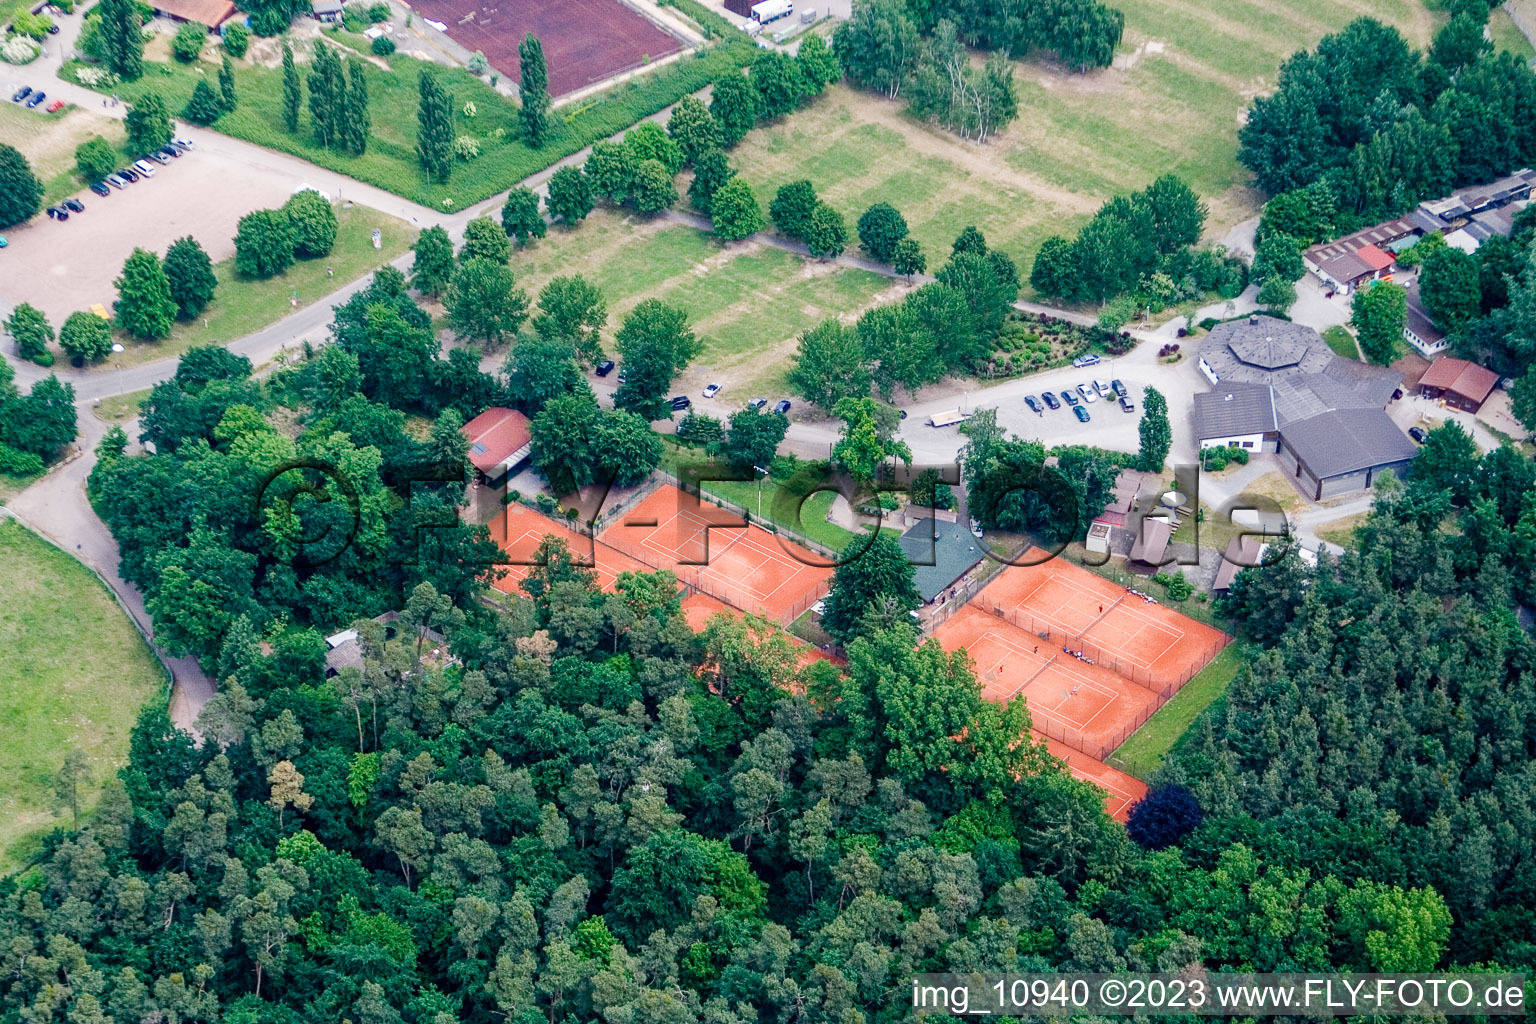 Vue aérienne de Club de tennis à Rülzheim dans le département Rhénanie-Palatinat, Allemagne